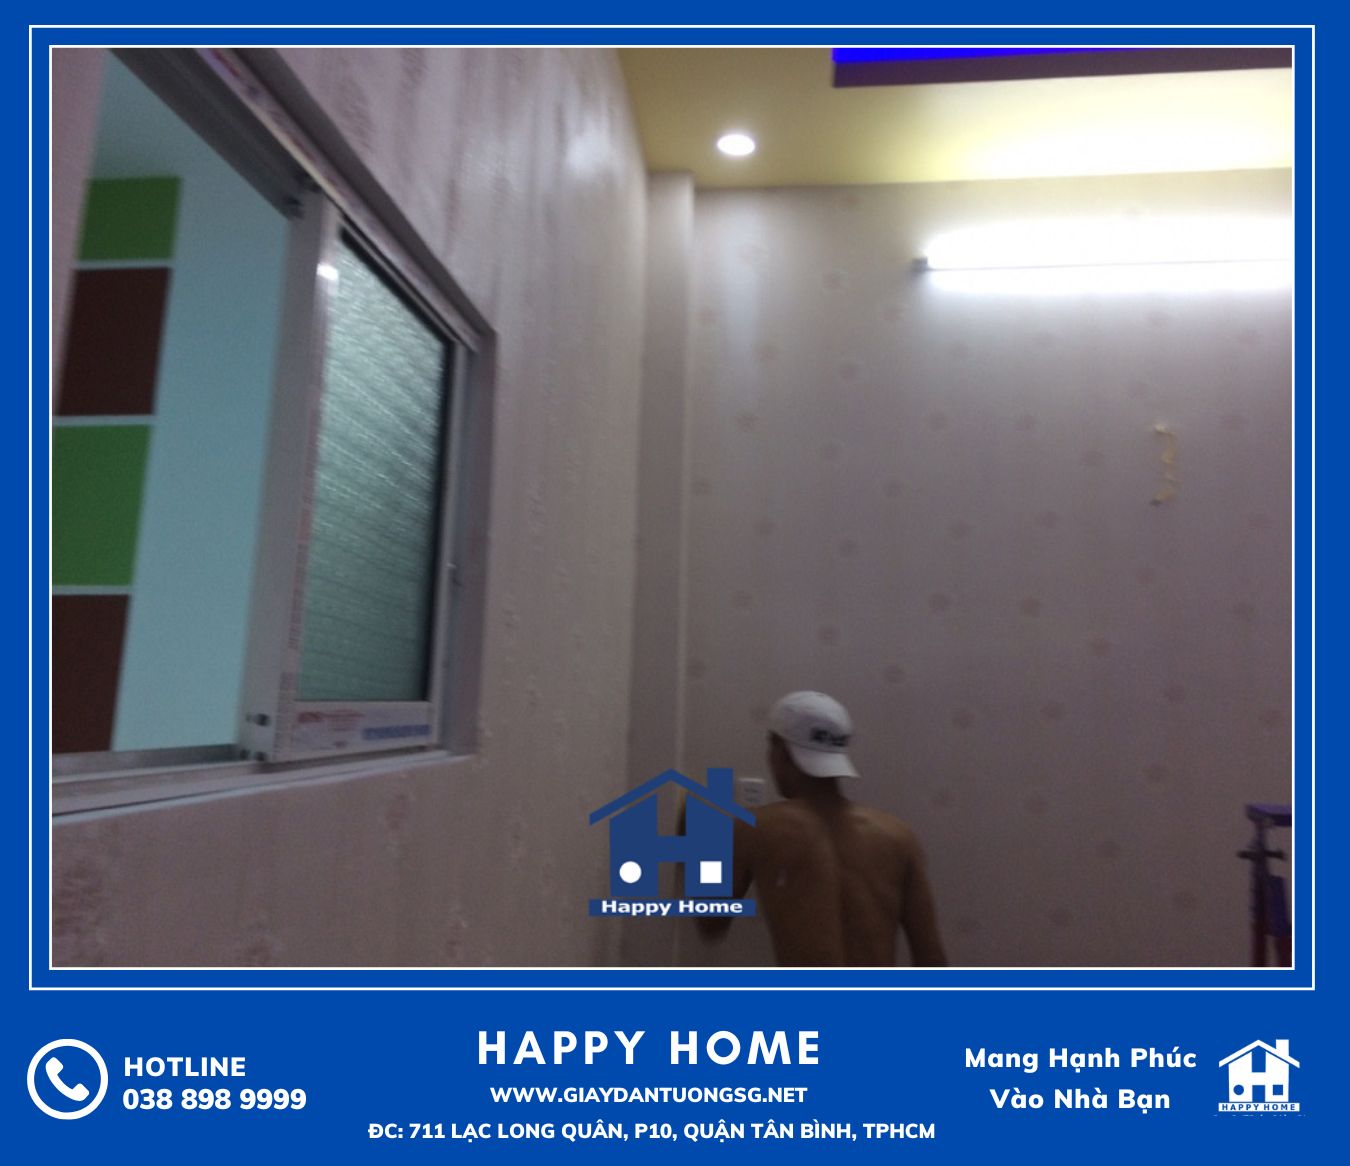 Đội ngũ Happy Home thi công nhanh gọn đẹp sạch sẽ các công trình giấy dán tường